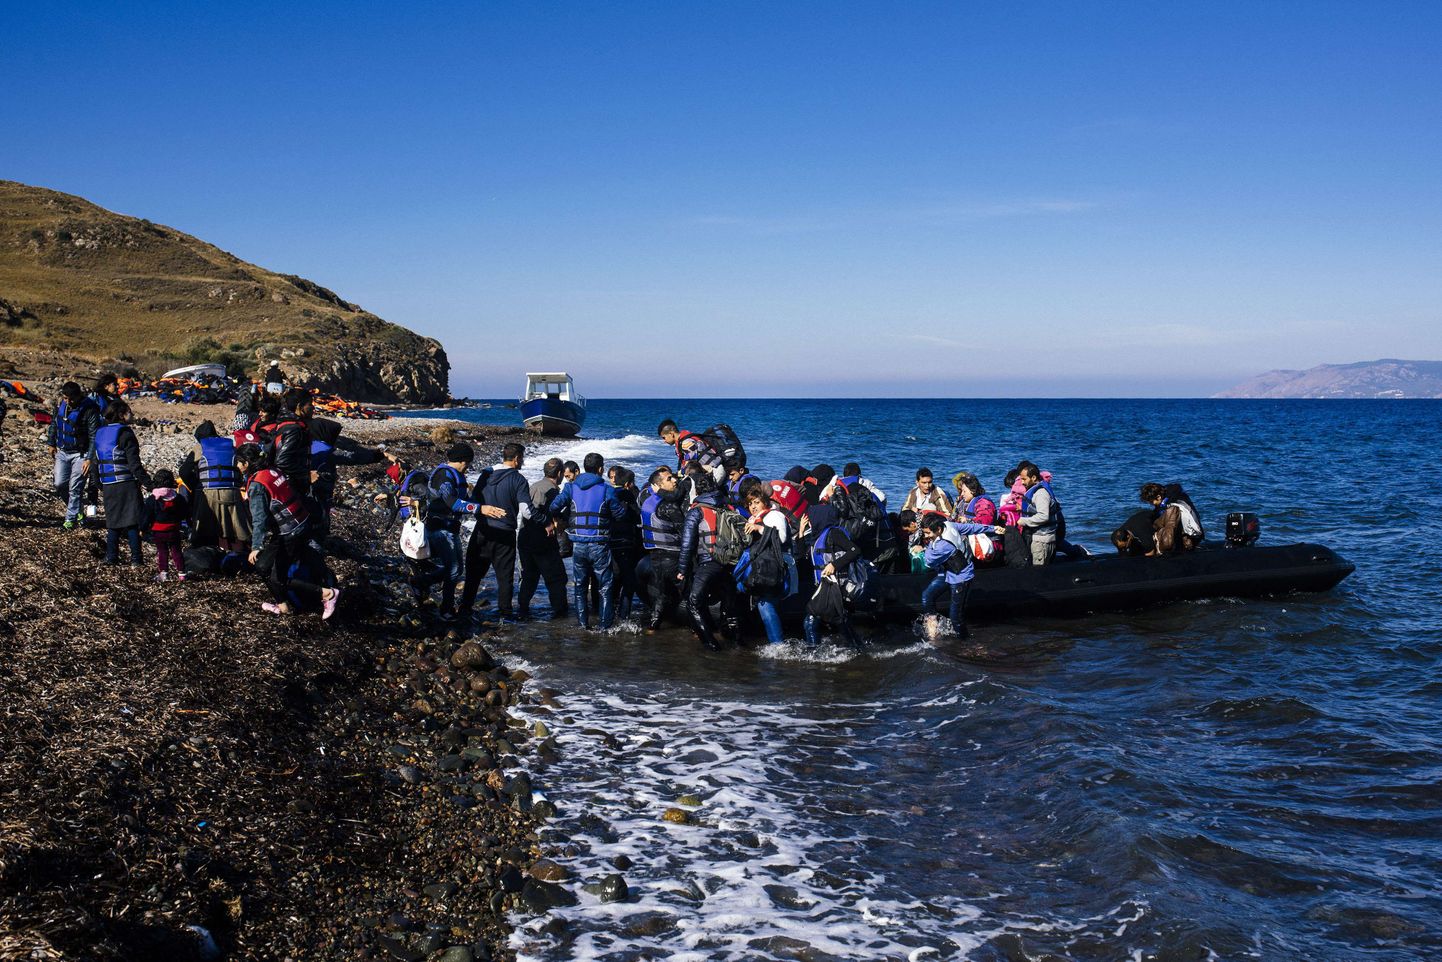 Pagulased saabumas kummipaadiga Lesbose saarele Kreekas pärast ohtlikku Egeuse mere ületamist.